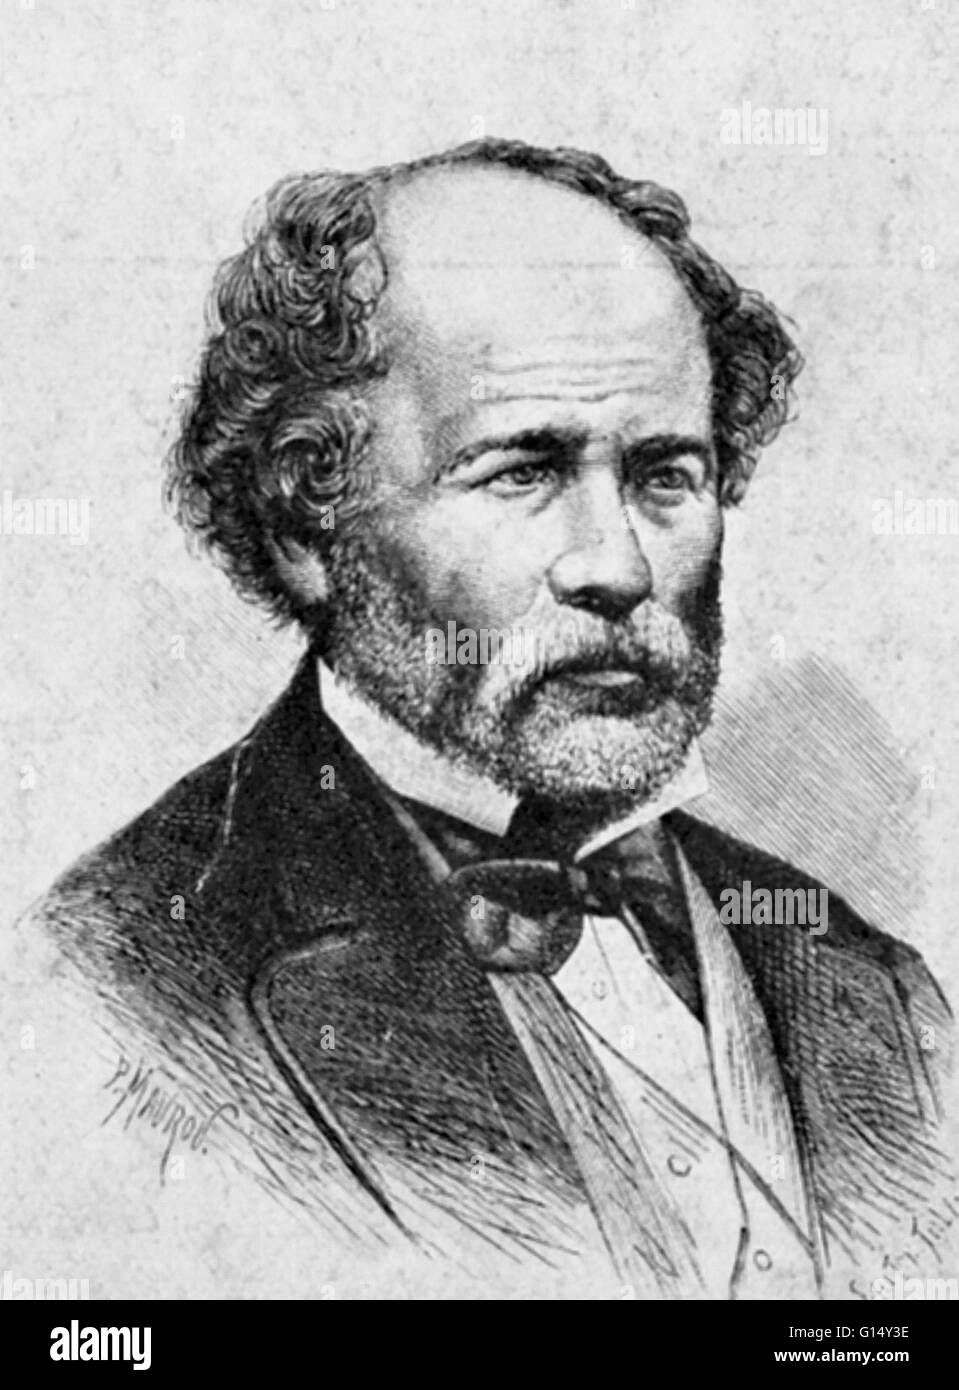 Matthew Fontaine Maury ((14. Januar 1806 - 1. Februar 1873) war ein US-amerikanischer Astronom, Historiker, Ozeanograph, Meteorologe, Kartograph, Autor, Geologe und Erzieher. Er erhielt den Spitznamen "Pathfinder der Meere" und "Vater der modernen Ozeanographie Stockfoto